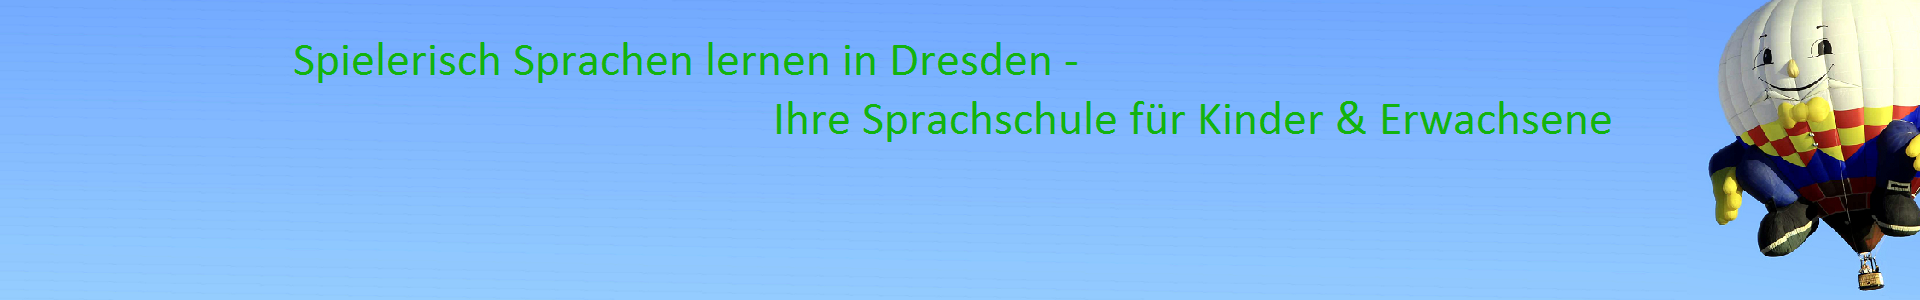 Headerbild_Sprachschule_Dresden_Double-Loop19.png